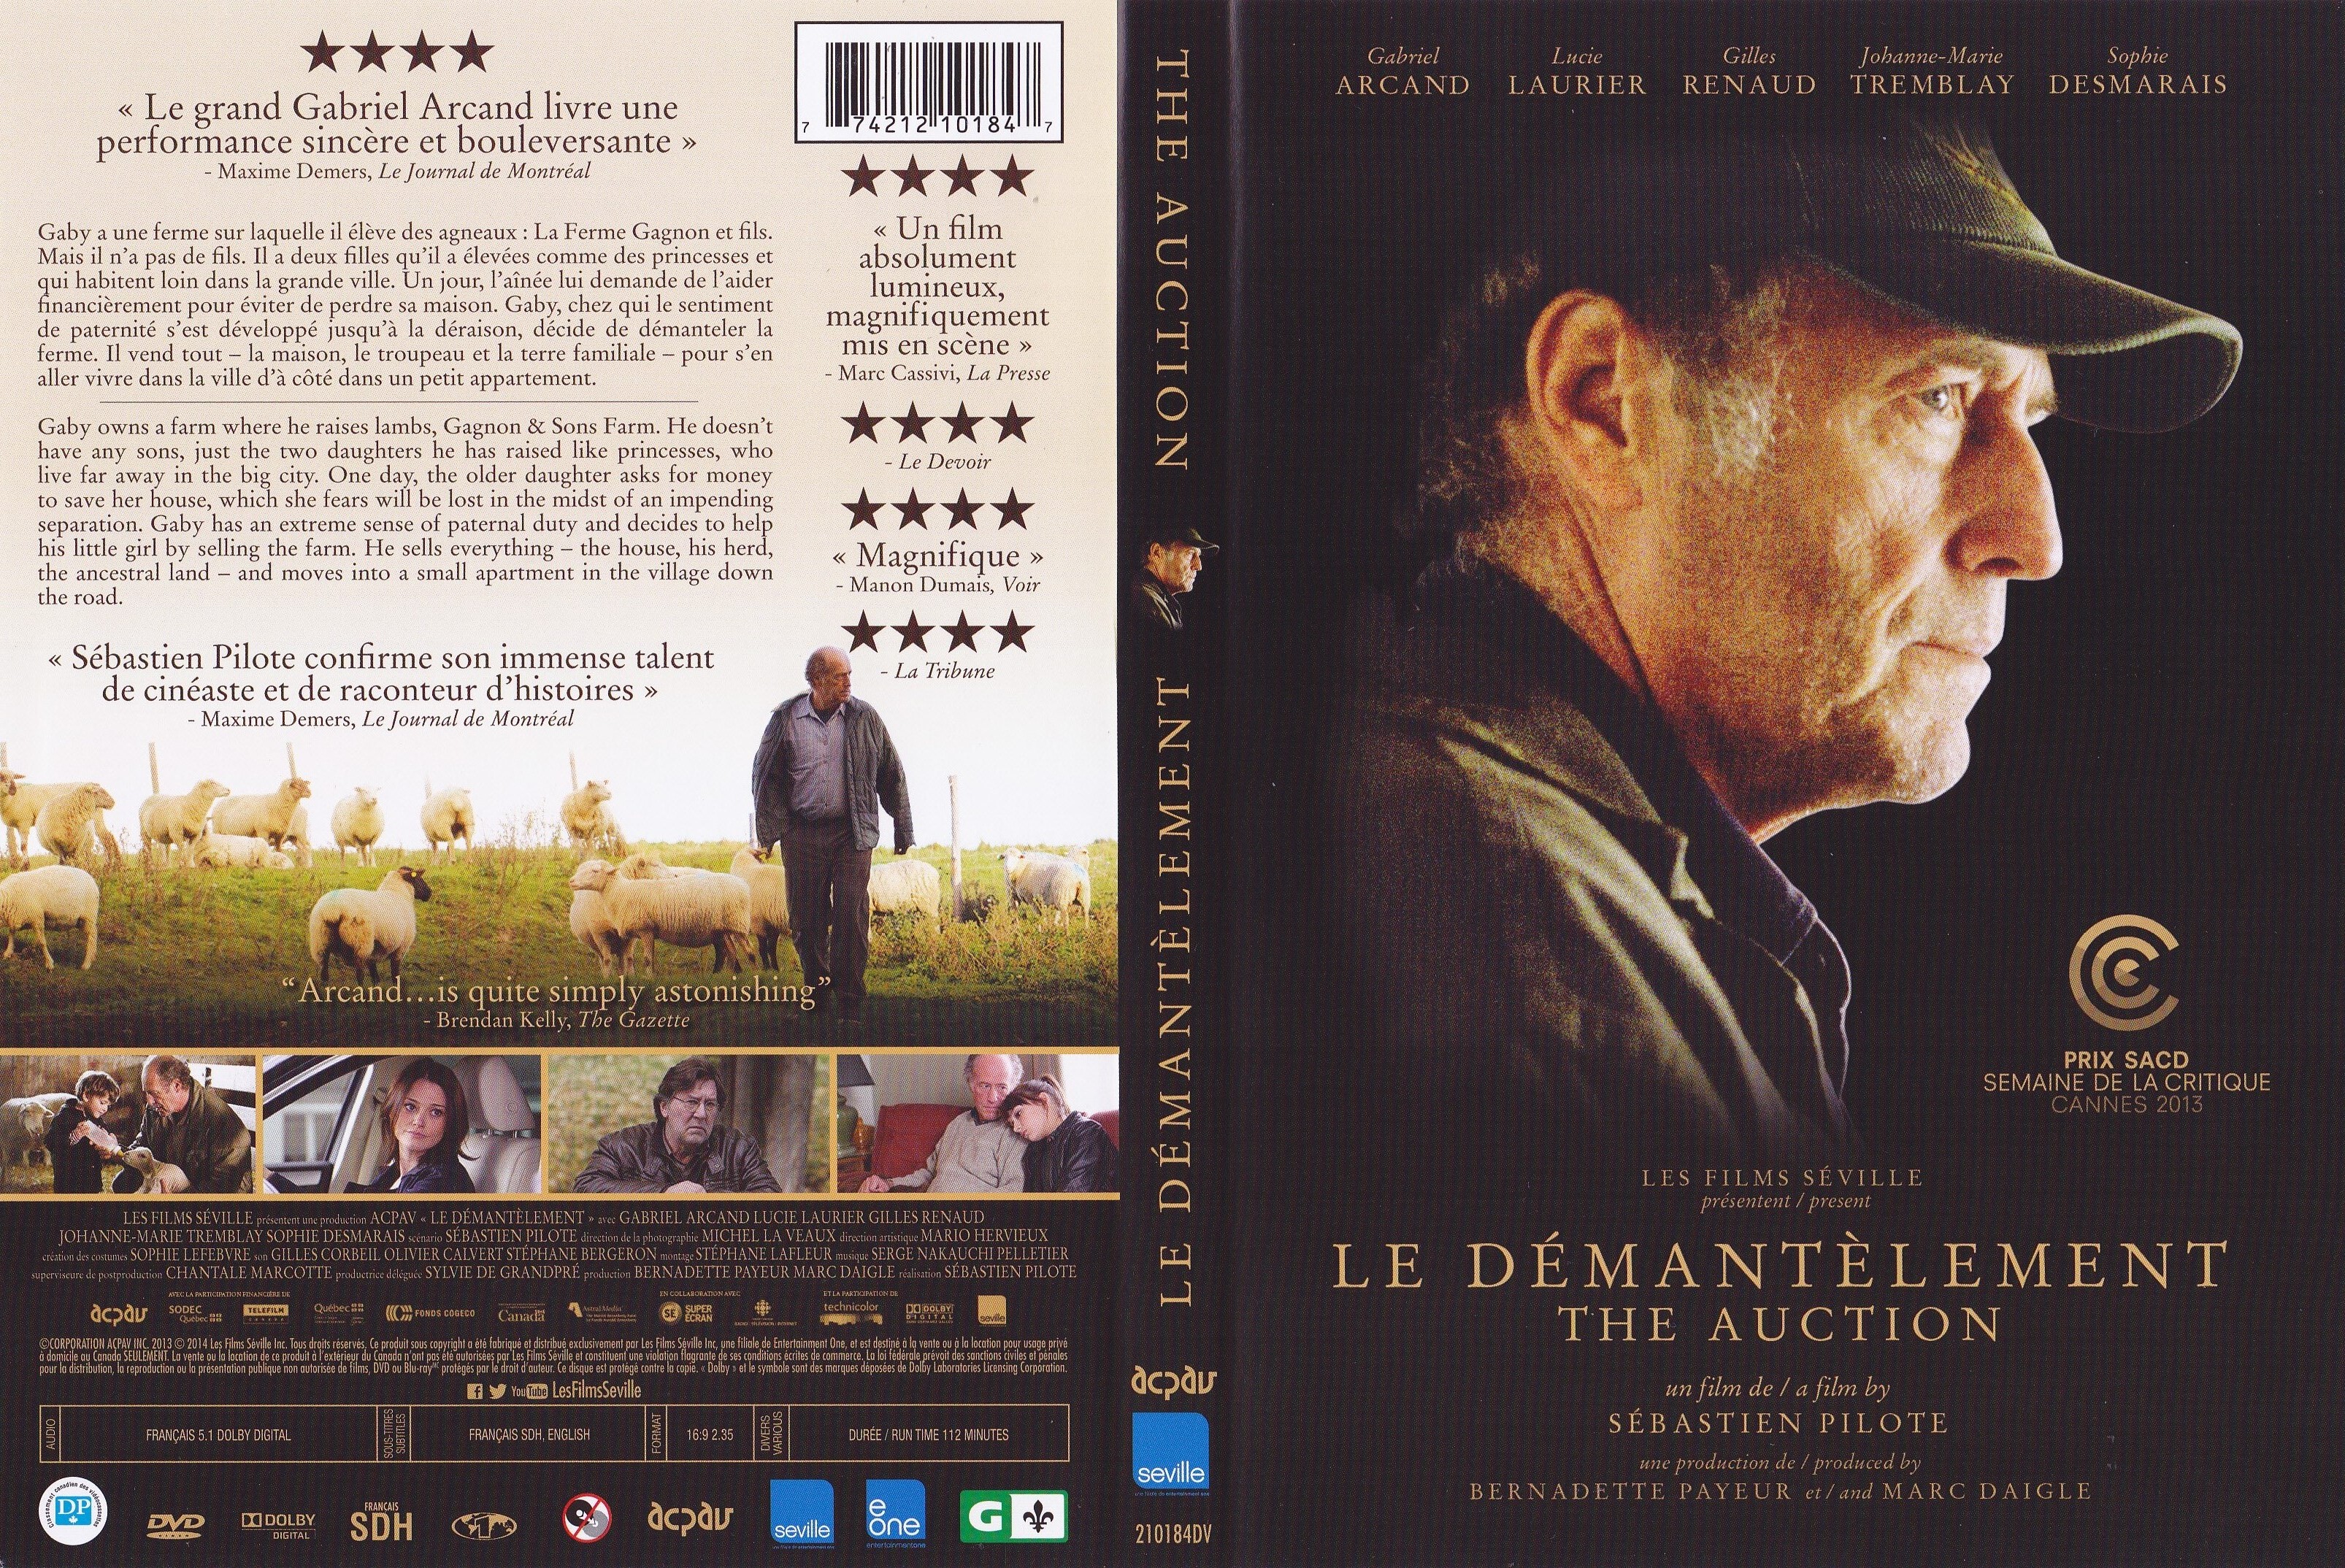 Jaquette DVD Le dmantlement - The auction (Canadienne)